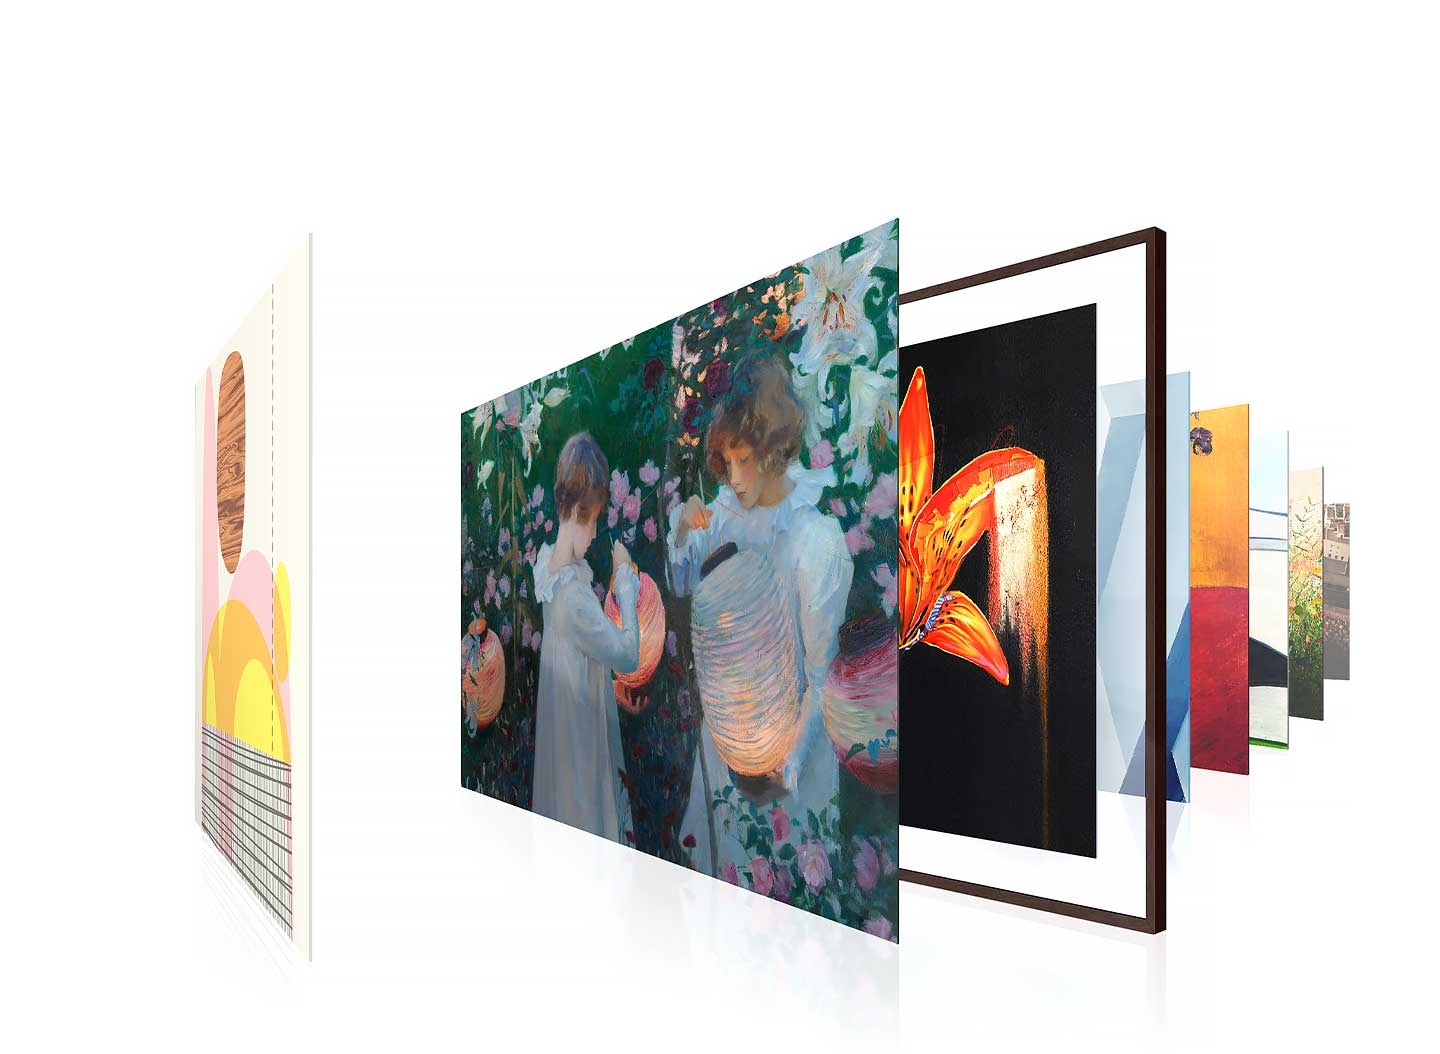 Verschillende gerenommeerde kunstwerken worden gepresenteerd op de frame -tv om beeldkwaliteit aan te tonen